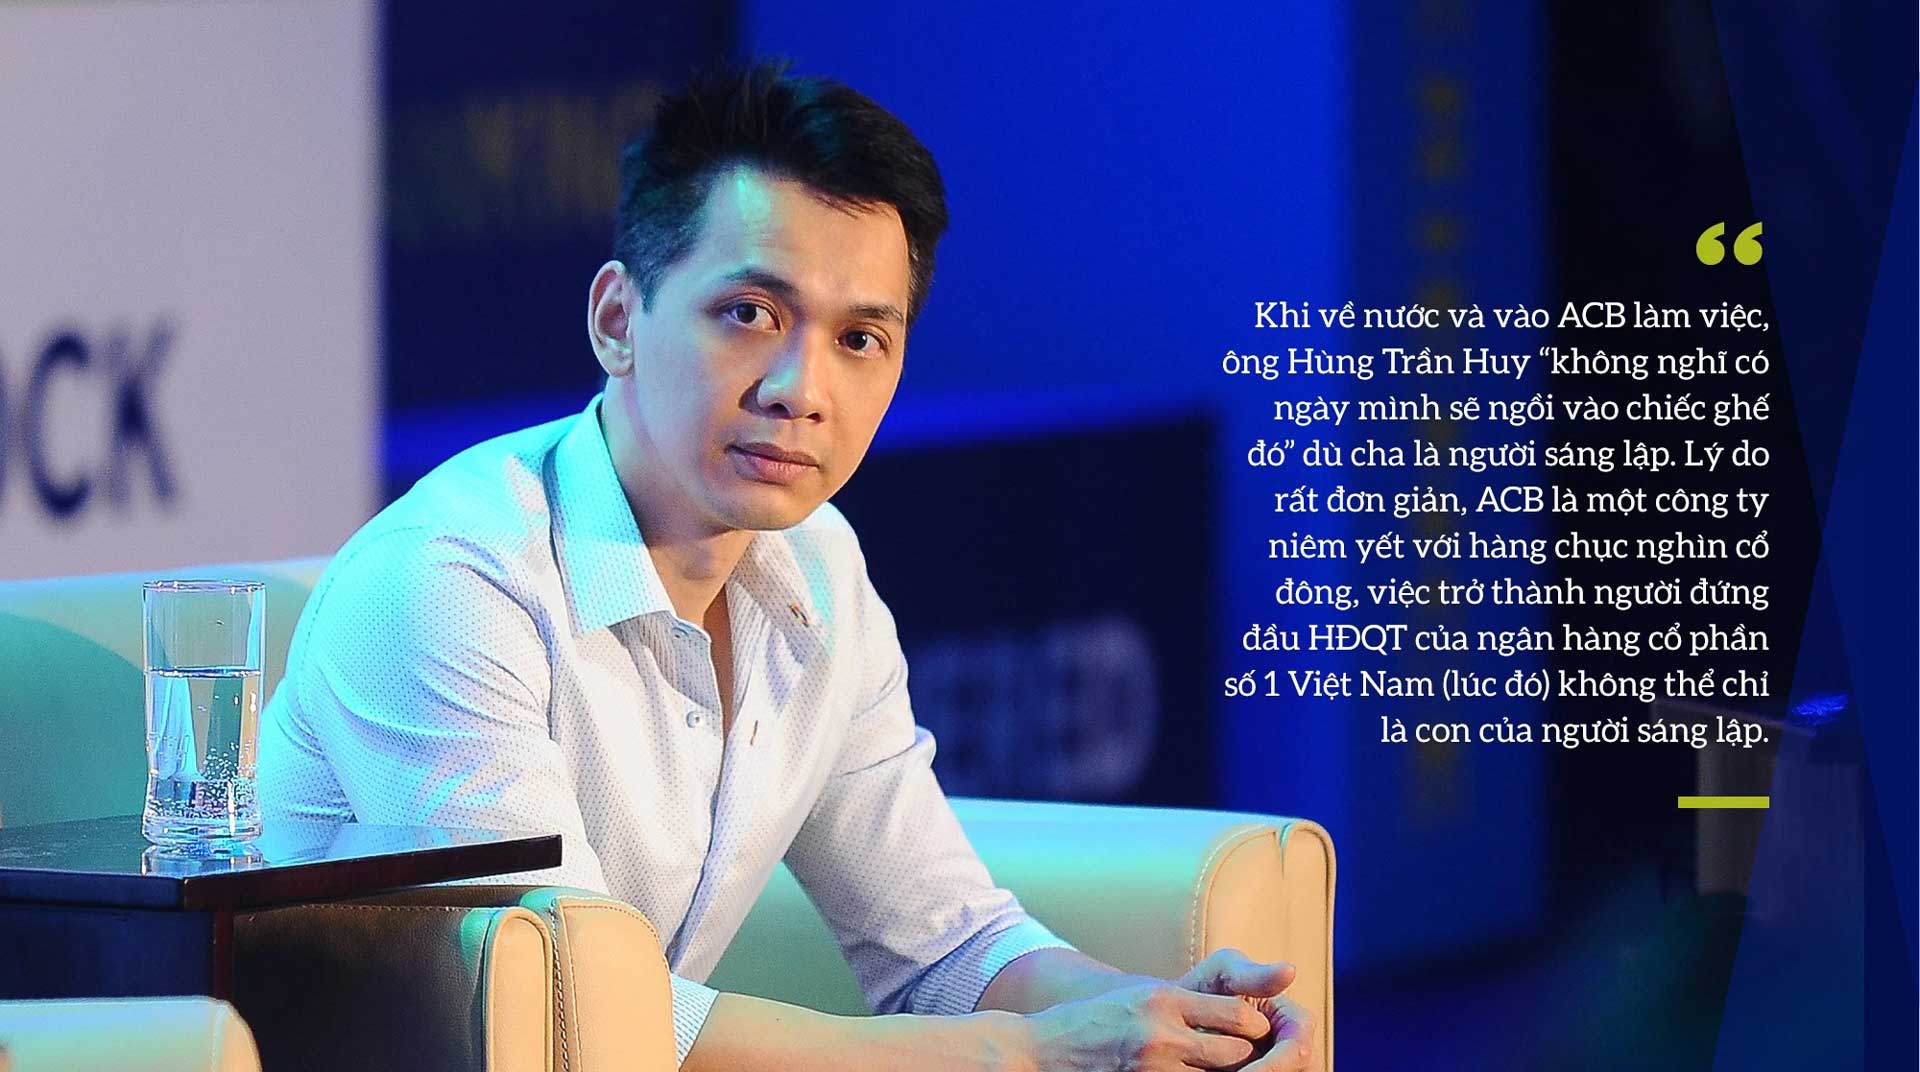 ong Tran Hung Huy da tro thanh vi Chu tich HDQT ke tiep cua ACB - Trần Hùng Huy là ai? Chủ tịch Hội đồng quản trị Ngân hàng ACB